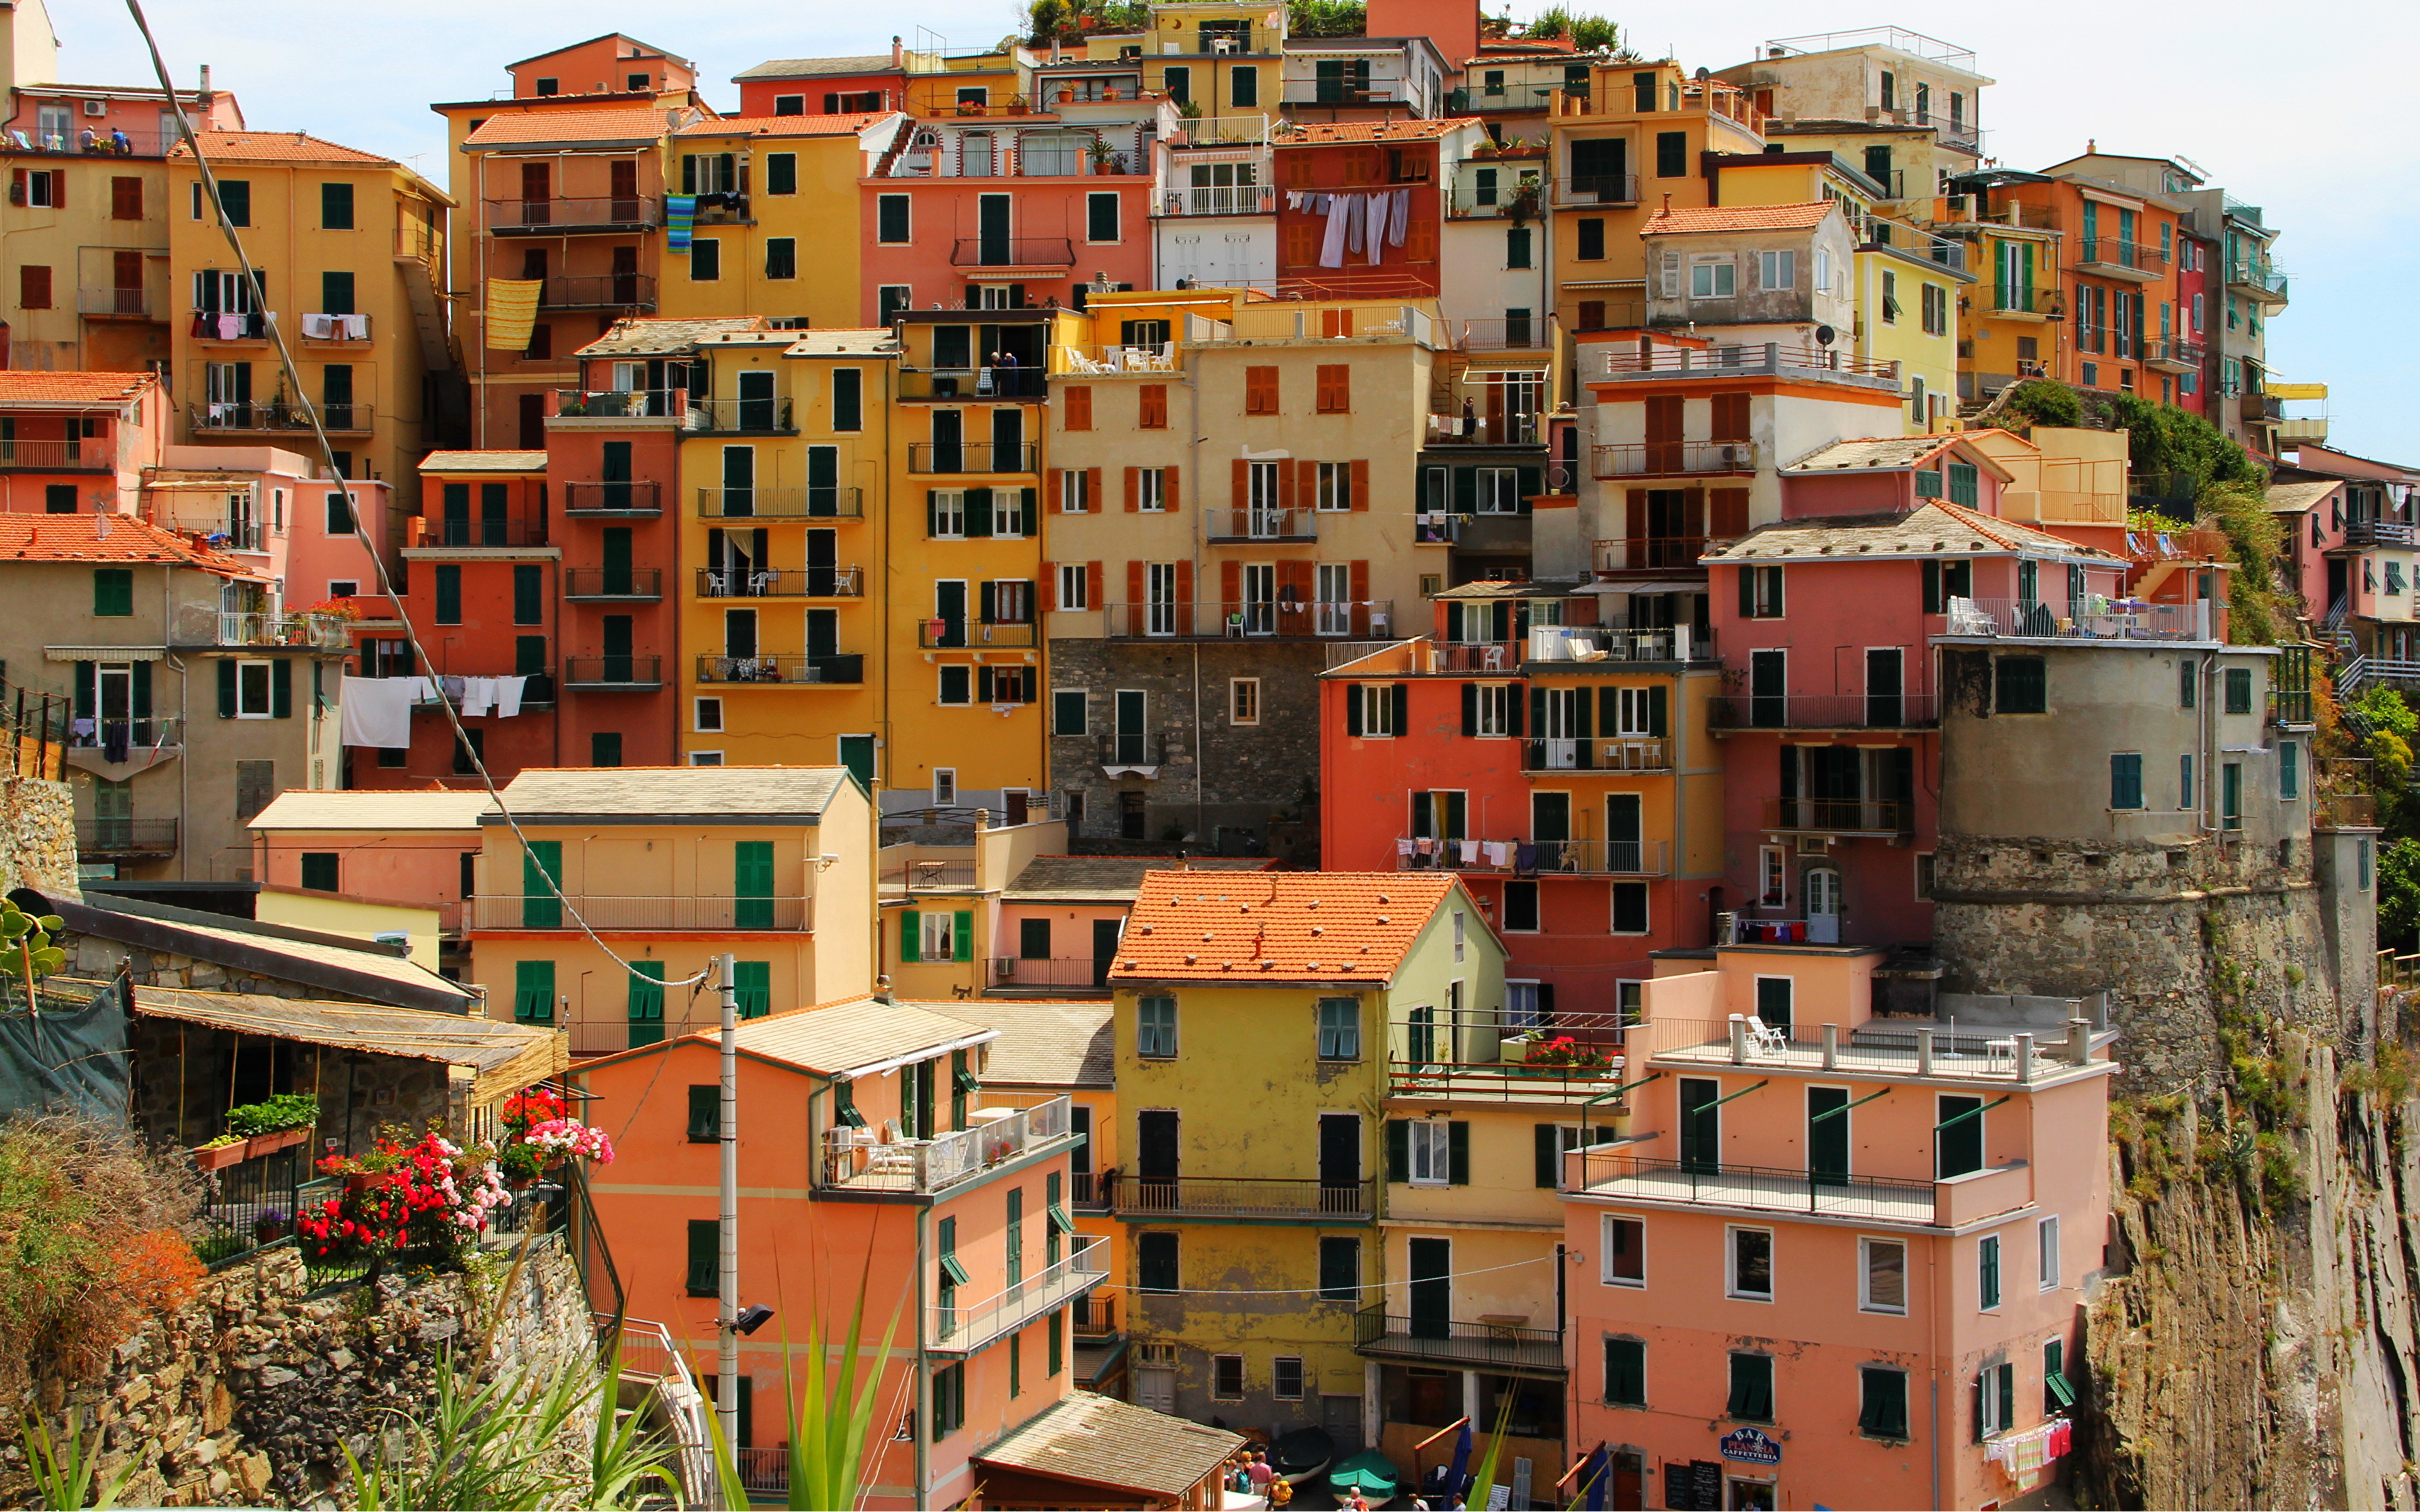 Фотографии домов в италии